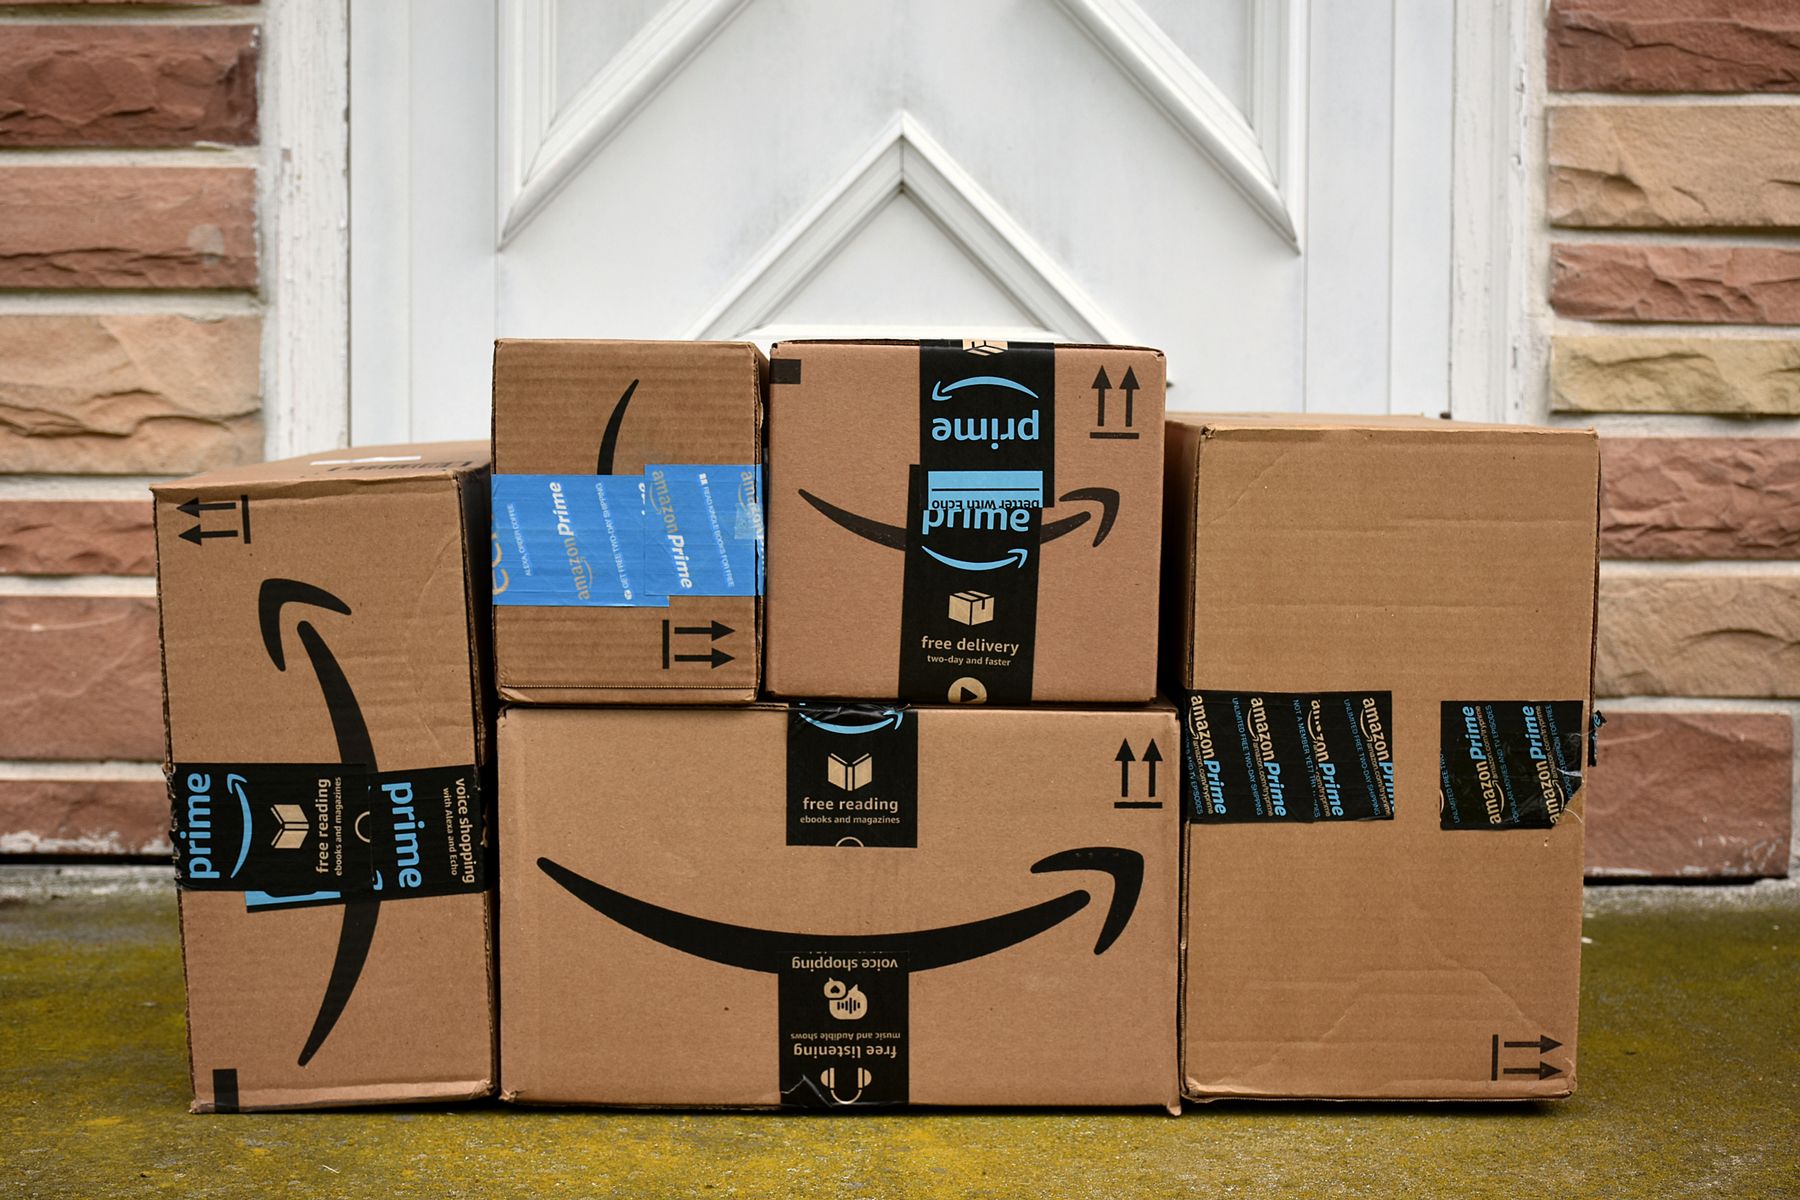 Amazon piedāvā bezmaksas piegādi brīvdienām - ikvienam